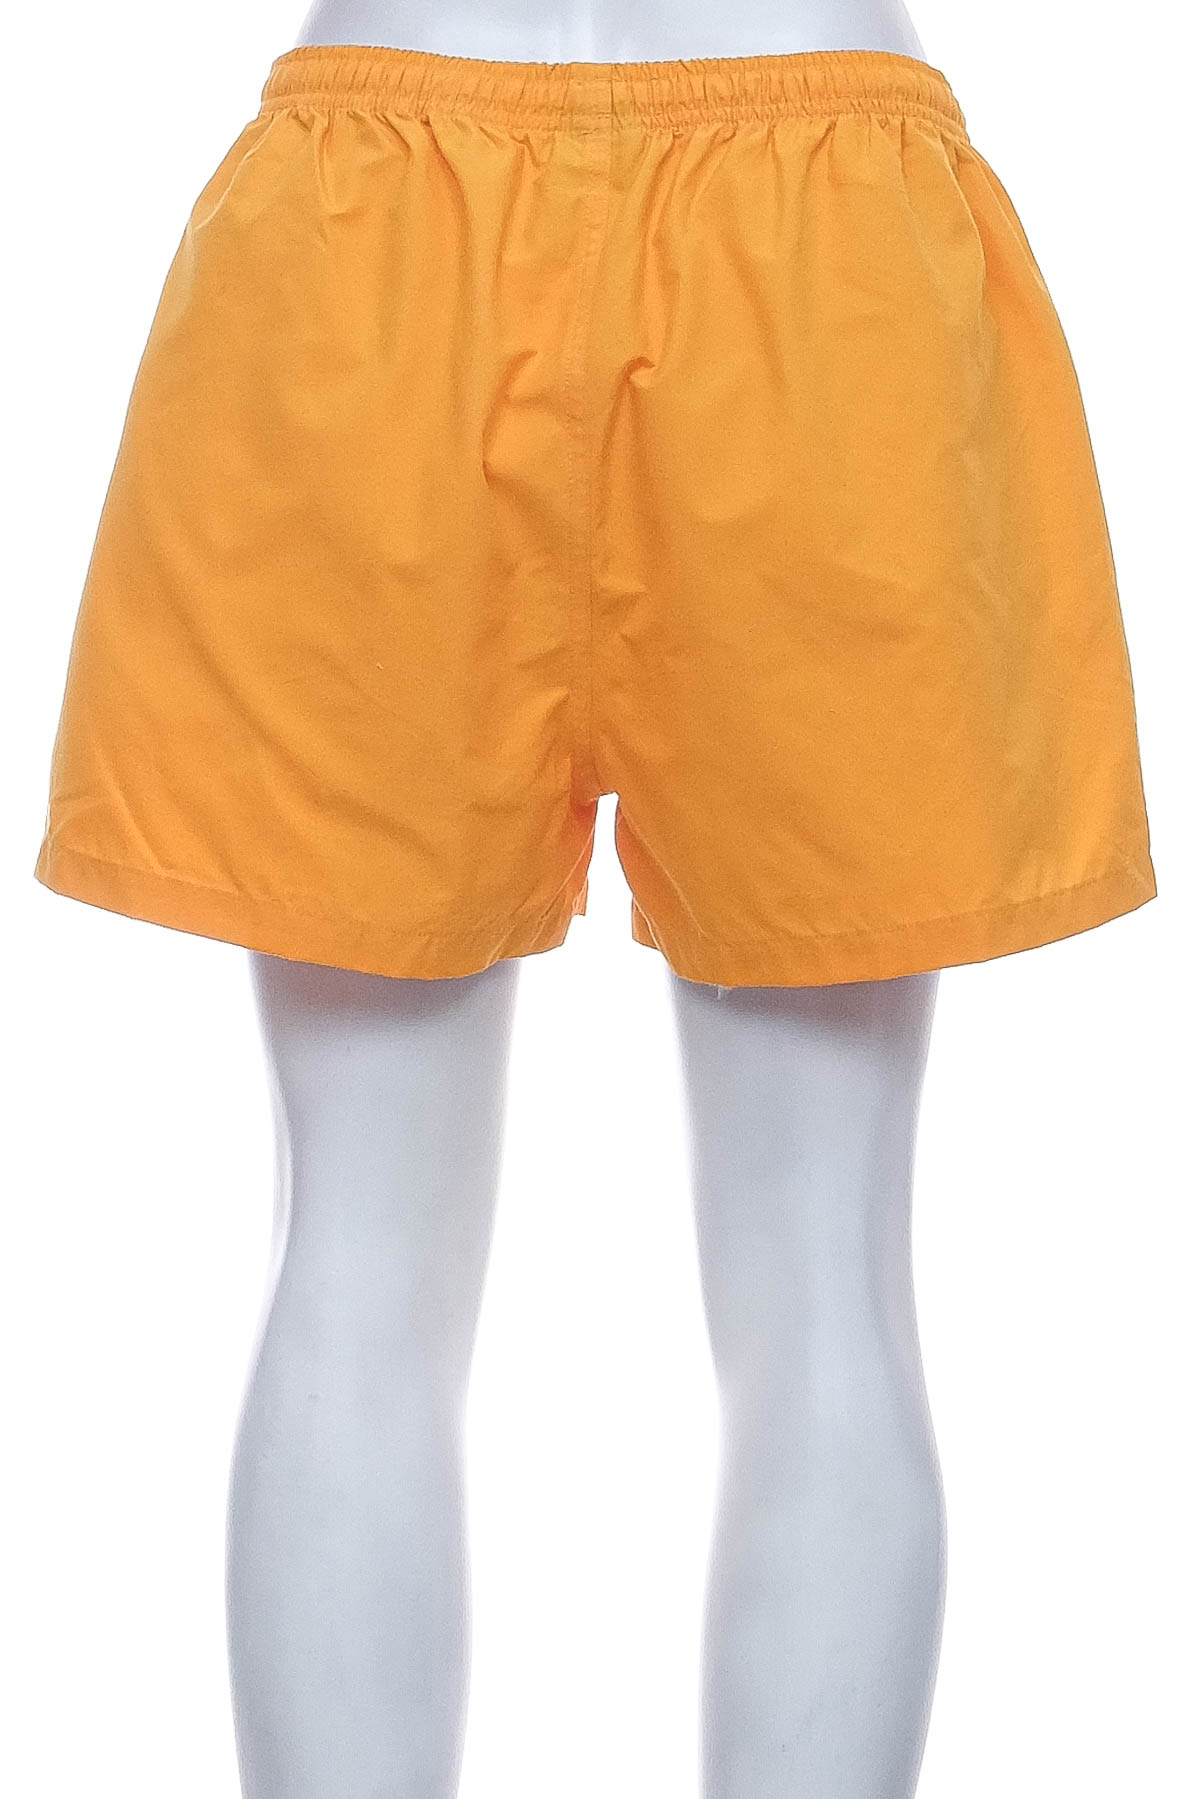 Women's shorts - Mitra - 1